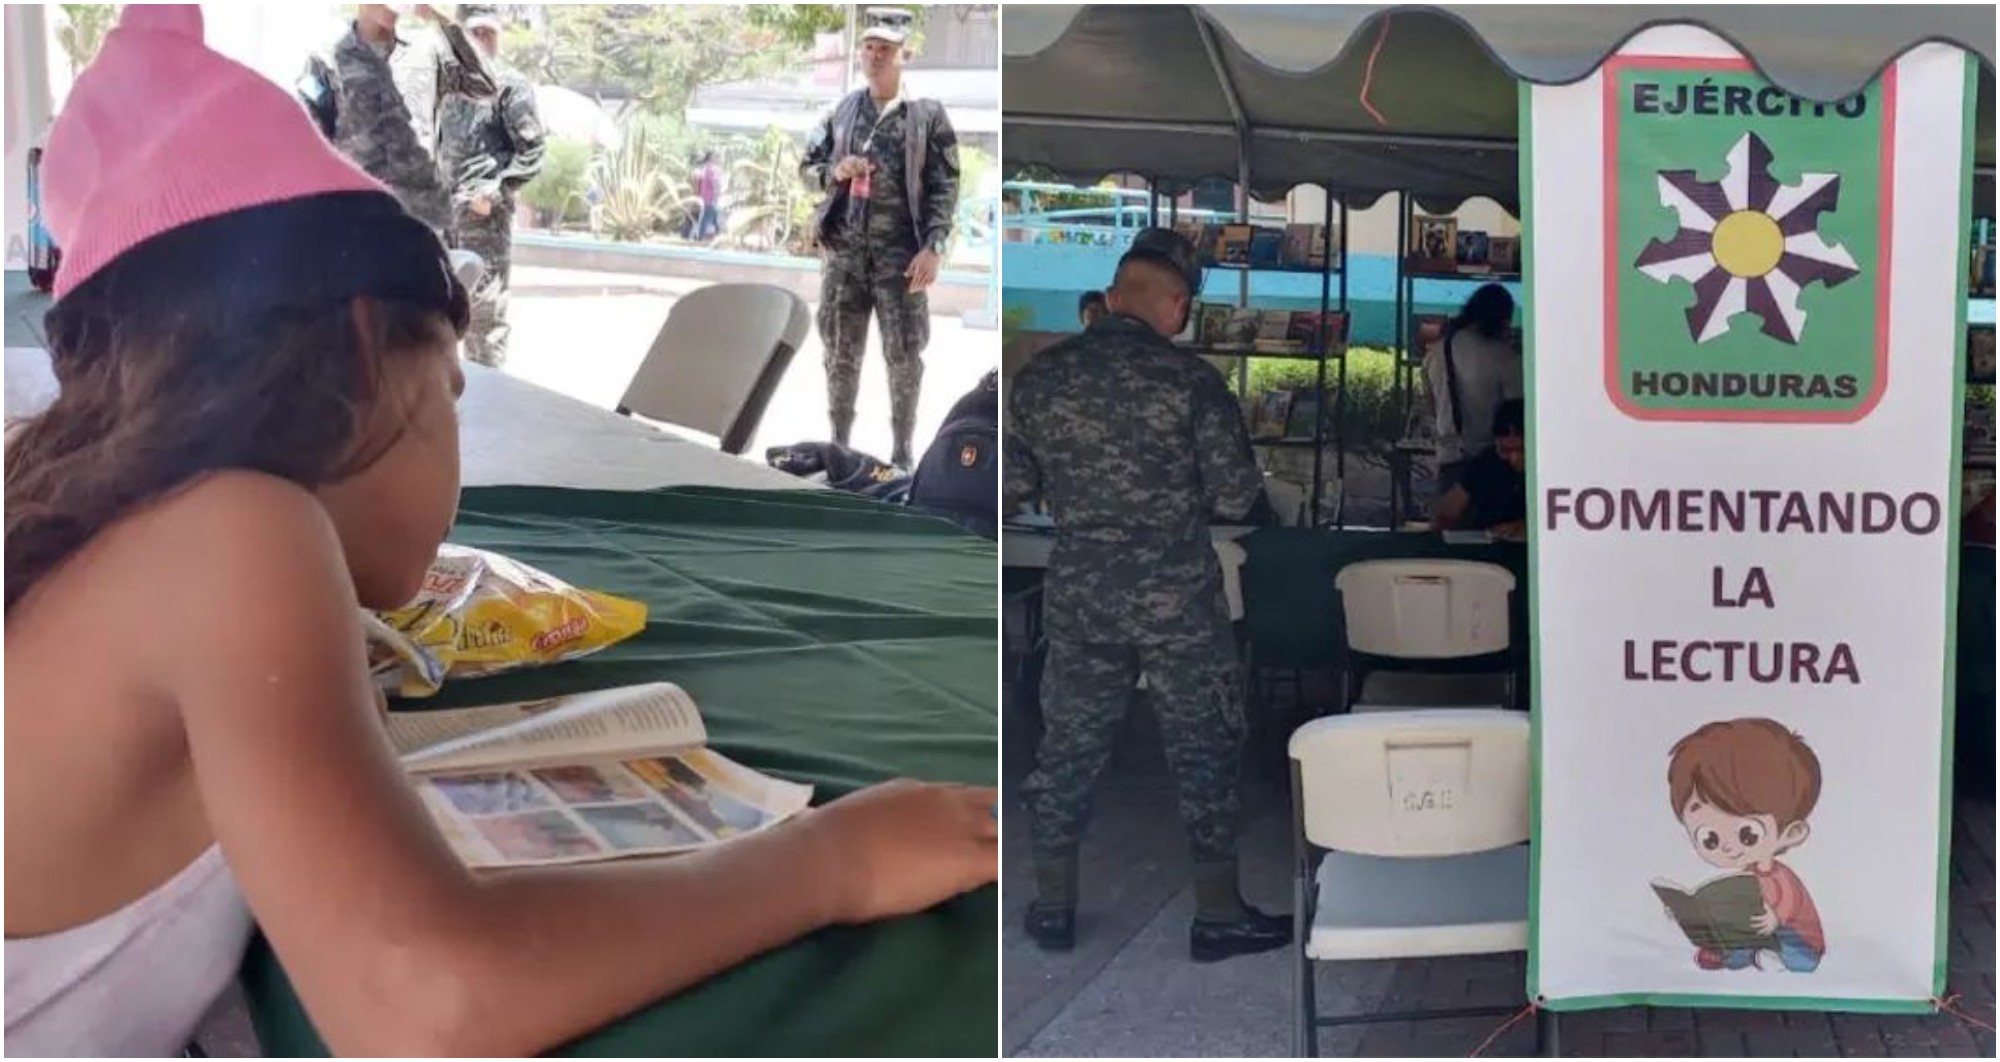 Ejército de Honduras llevó a cabo la actividad «Fomentando la Lectura»